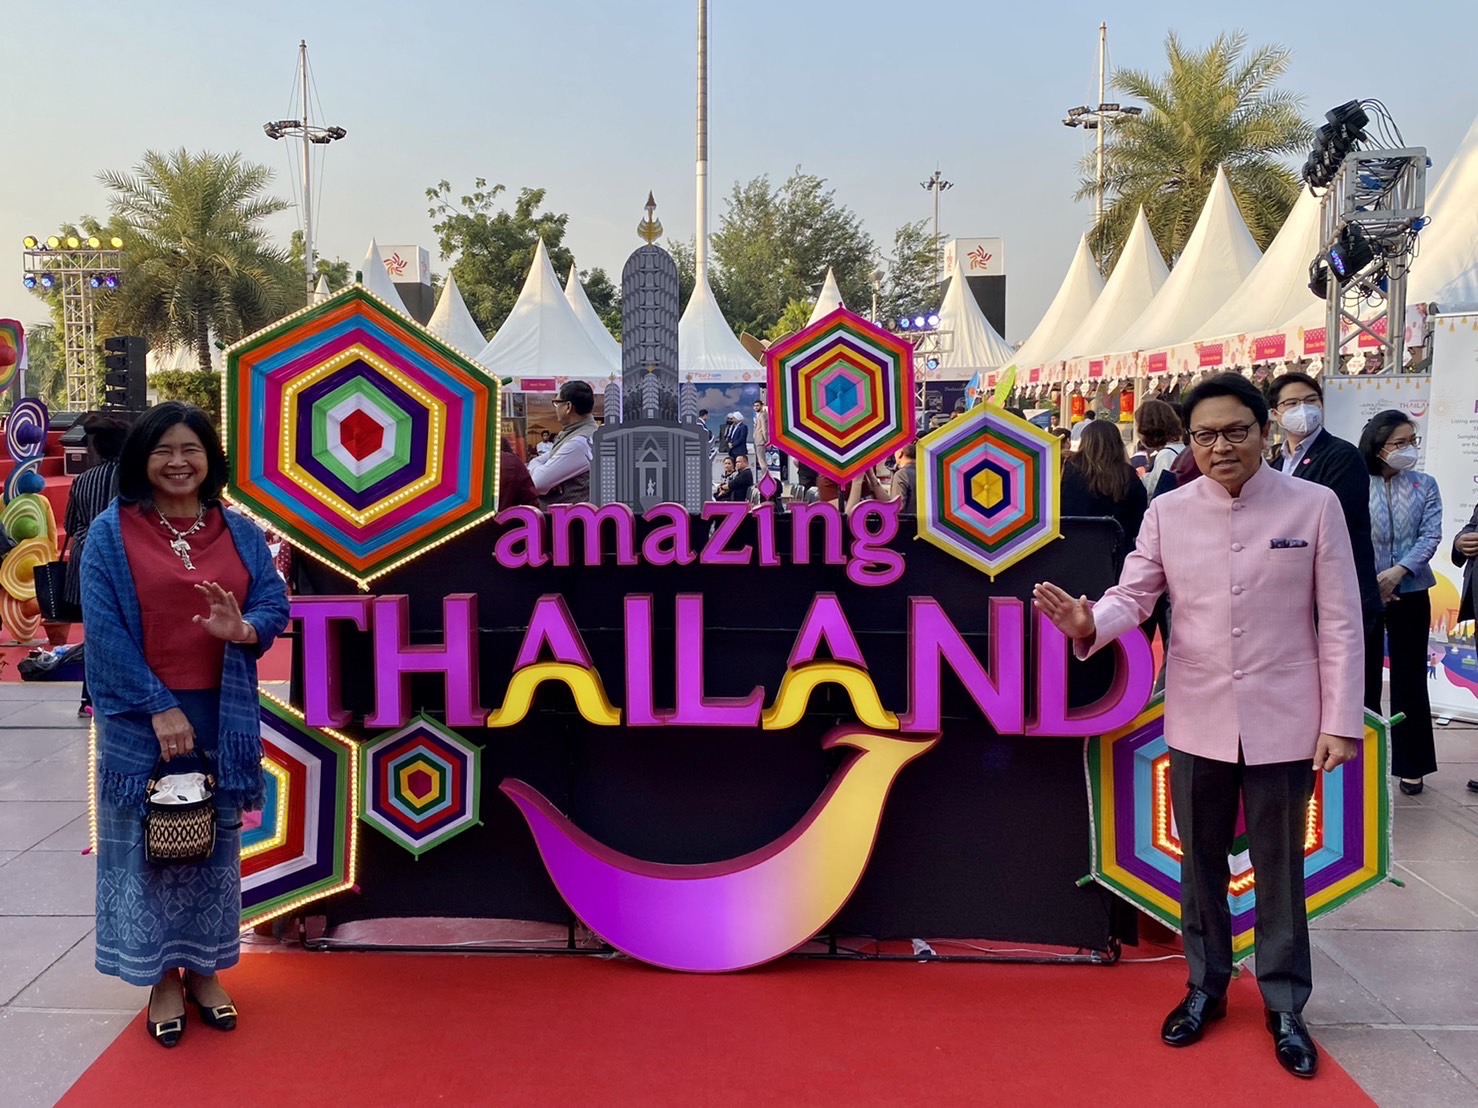 ททท. เร่งกระตุ้นตลาดนักท่องเที่ยวระยะใกล้ ชูคอนคอนเซปต์ “Amazing Thailand close to you than ever!” พร้อมบุกจัดงาน Consumer Fair ต่อเนื่อง มุ่งรายได้ตลาดนักท่องเที่ยวต่างชาติ 1.5 ล้านล้านบาทในปี 2566